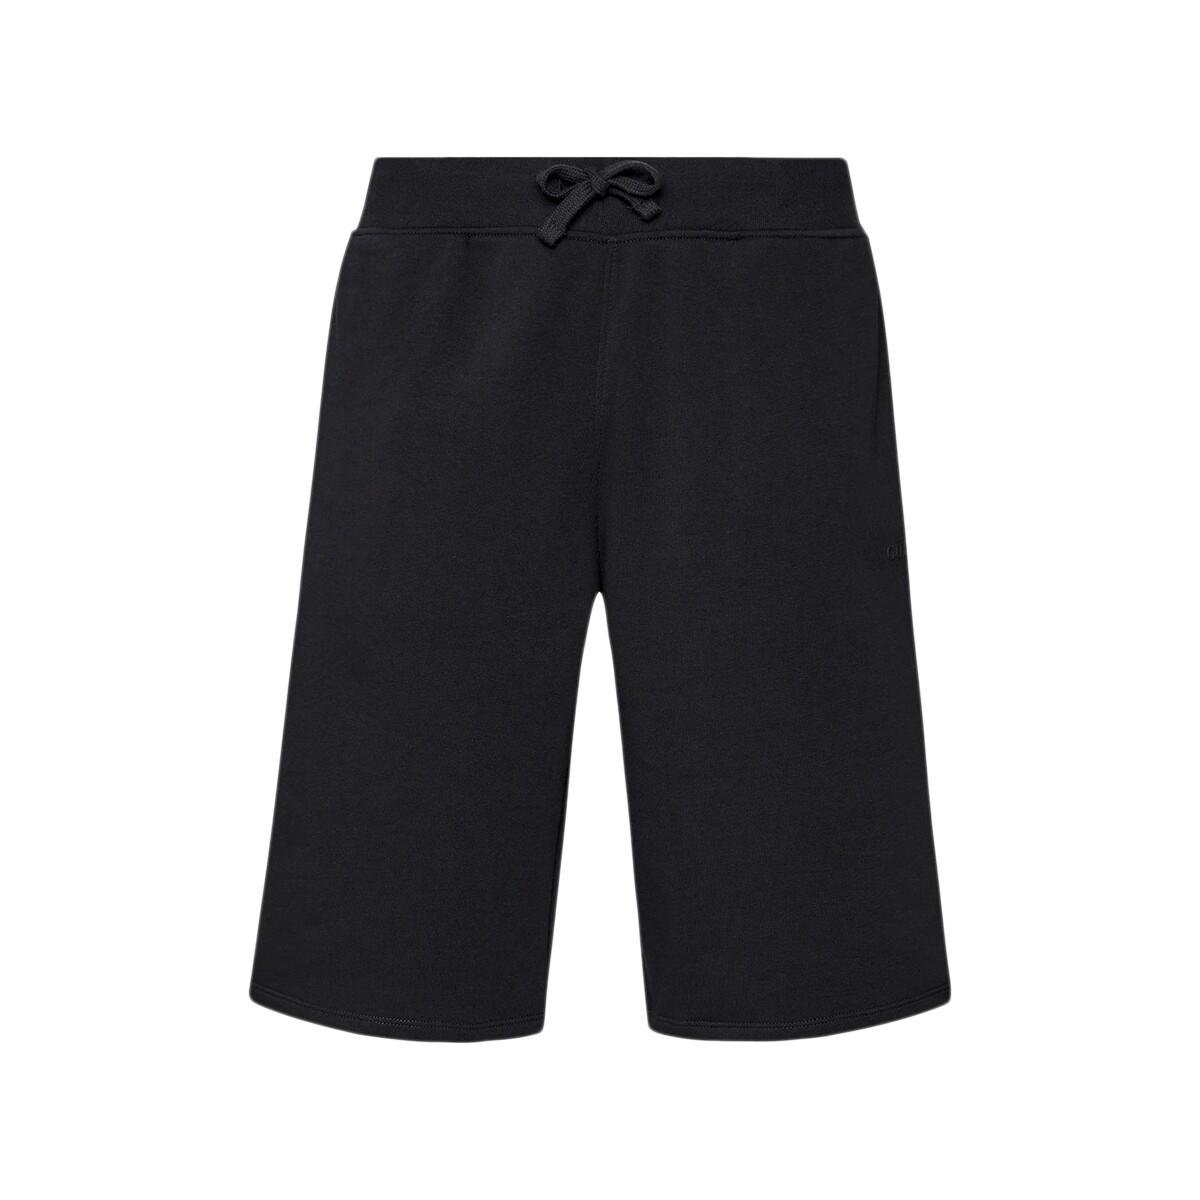 Vêtements Homme Shorts / Bermudas Guess Clovis Noir